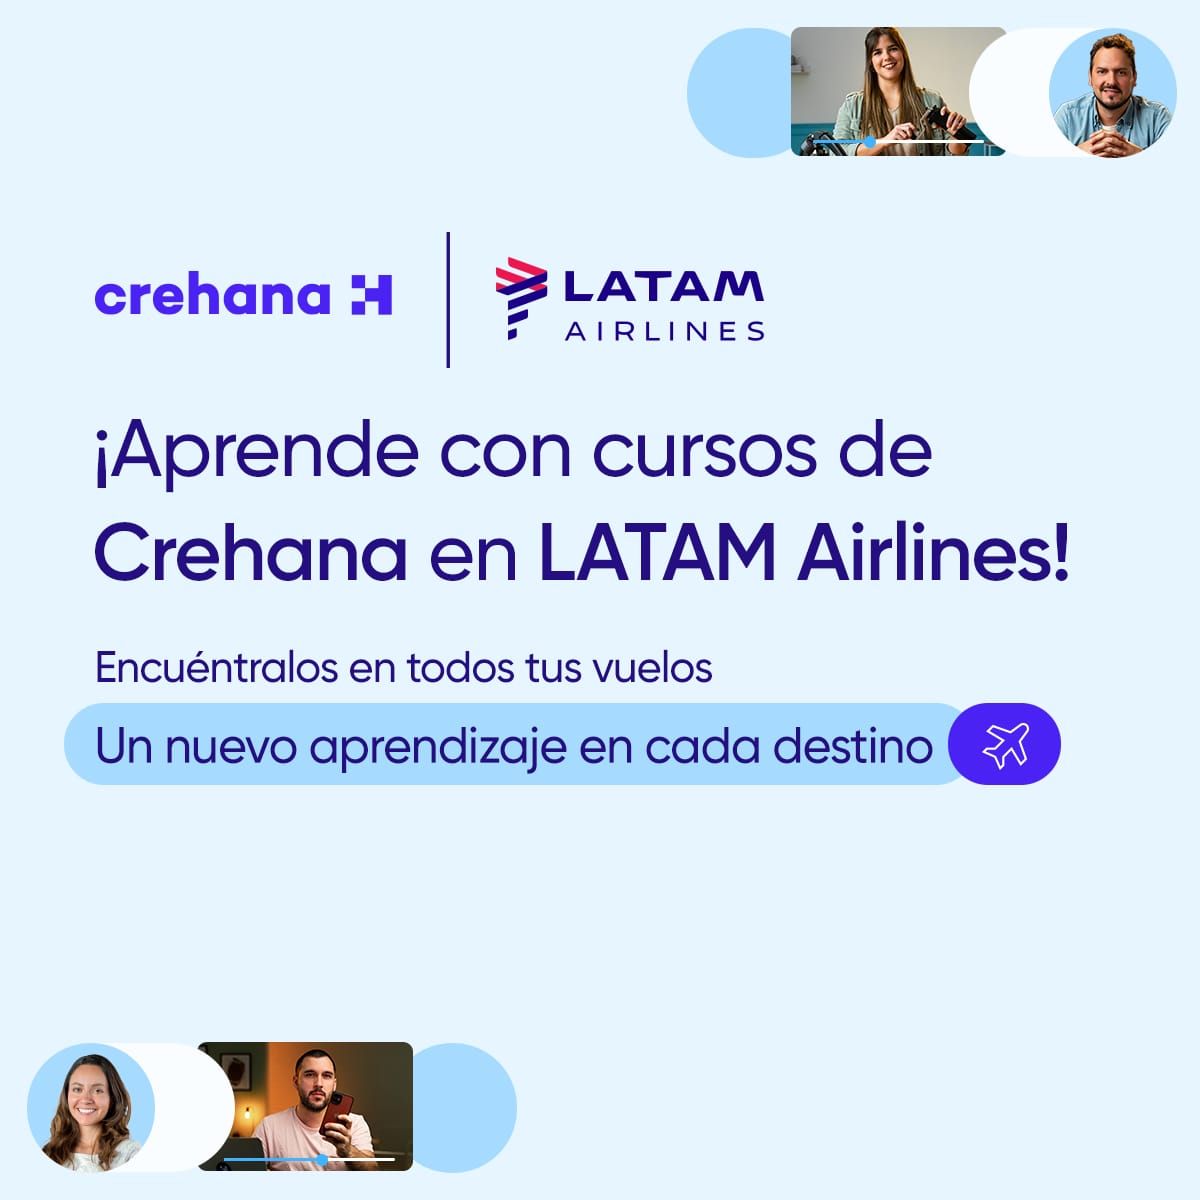 Las ventajas del aprendizaje remoto ahora llegan al asiento del avión gracias a la alianza suscrita recientemente entre Crehana y el Grupo Latam